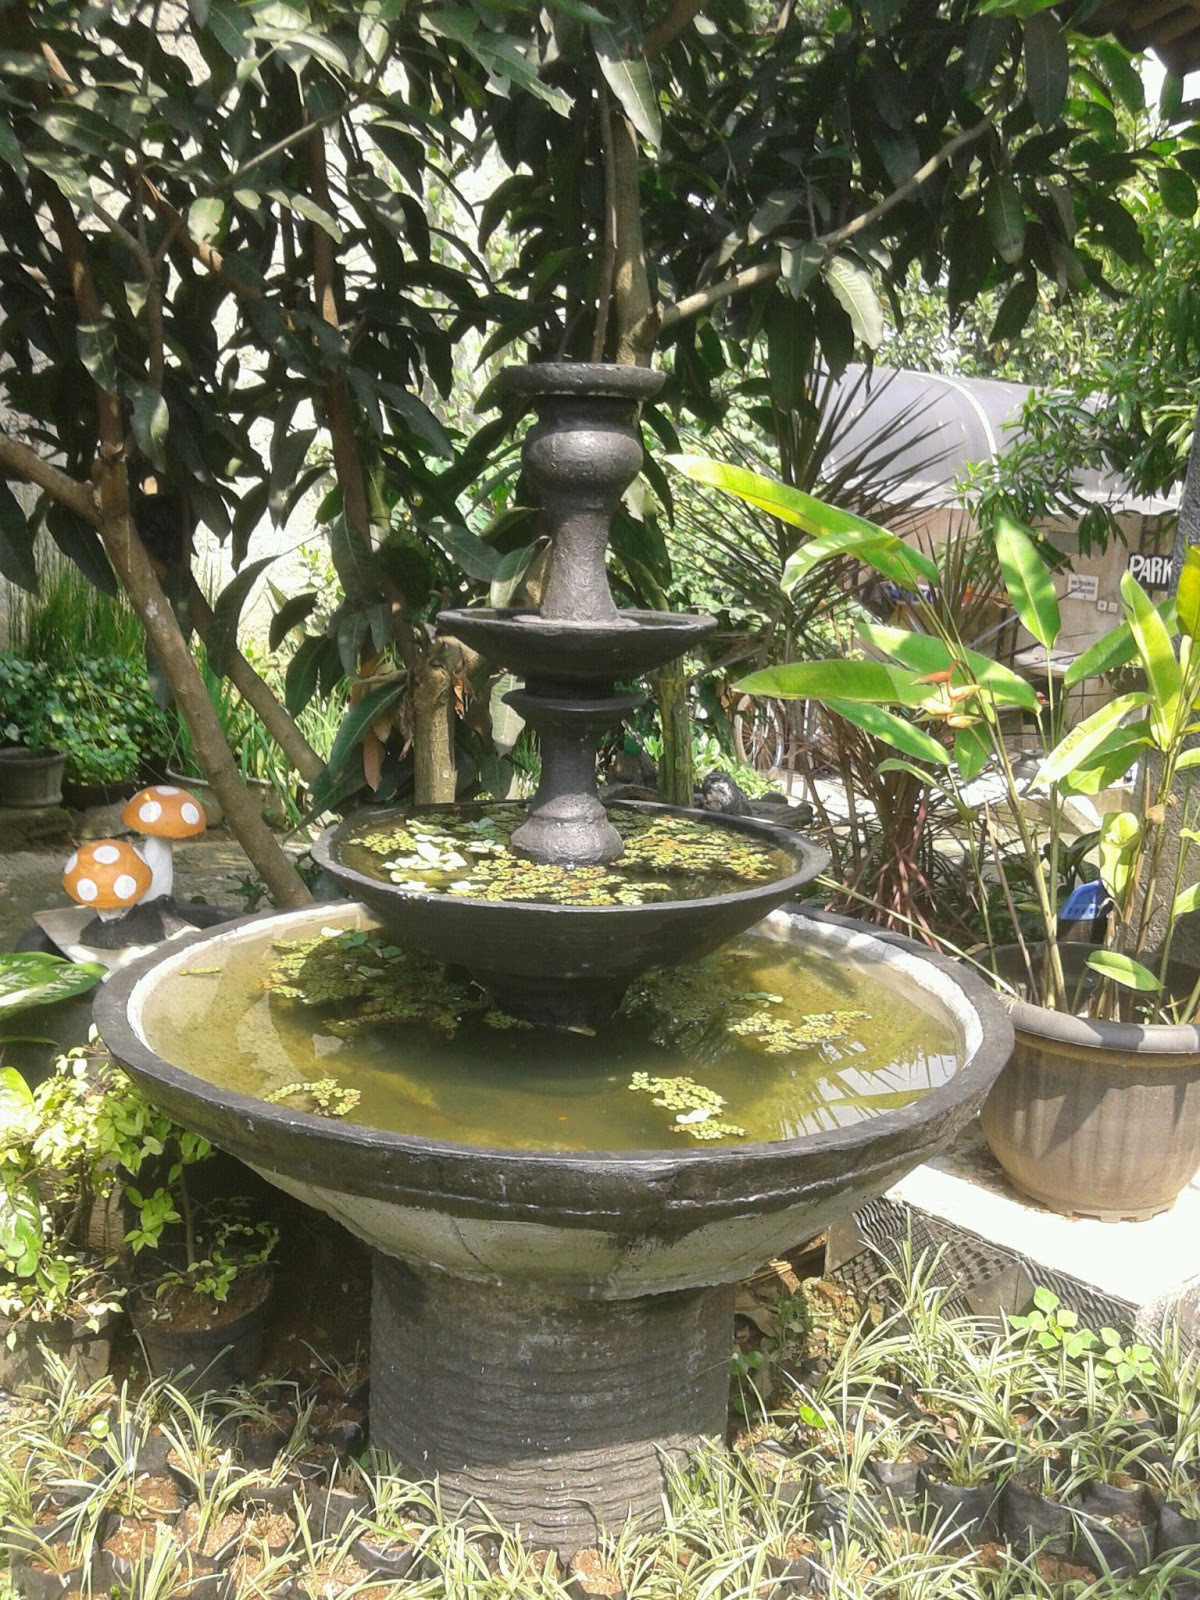 Jual pot  keramik  pot  minimalis pagoda air mancur 